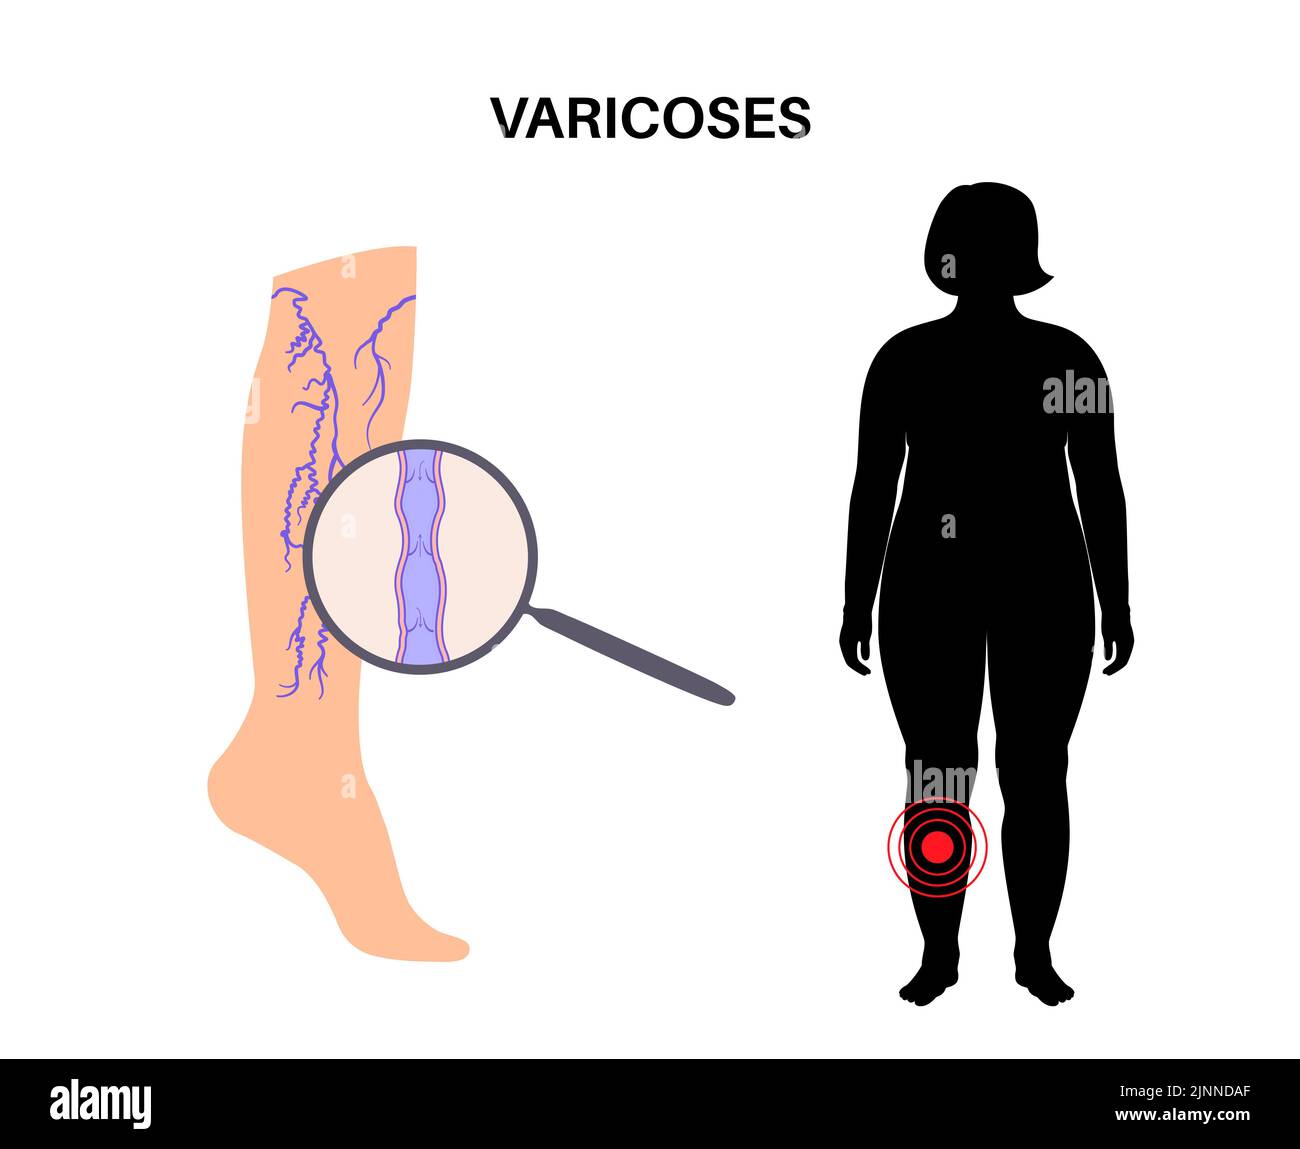 Varicose veins, illustration Stock Photo